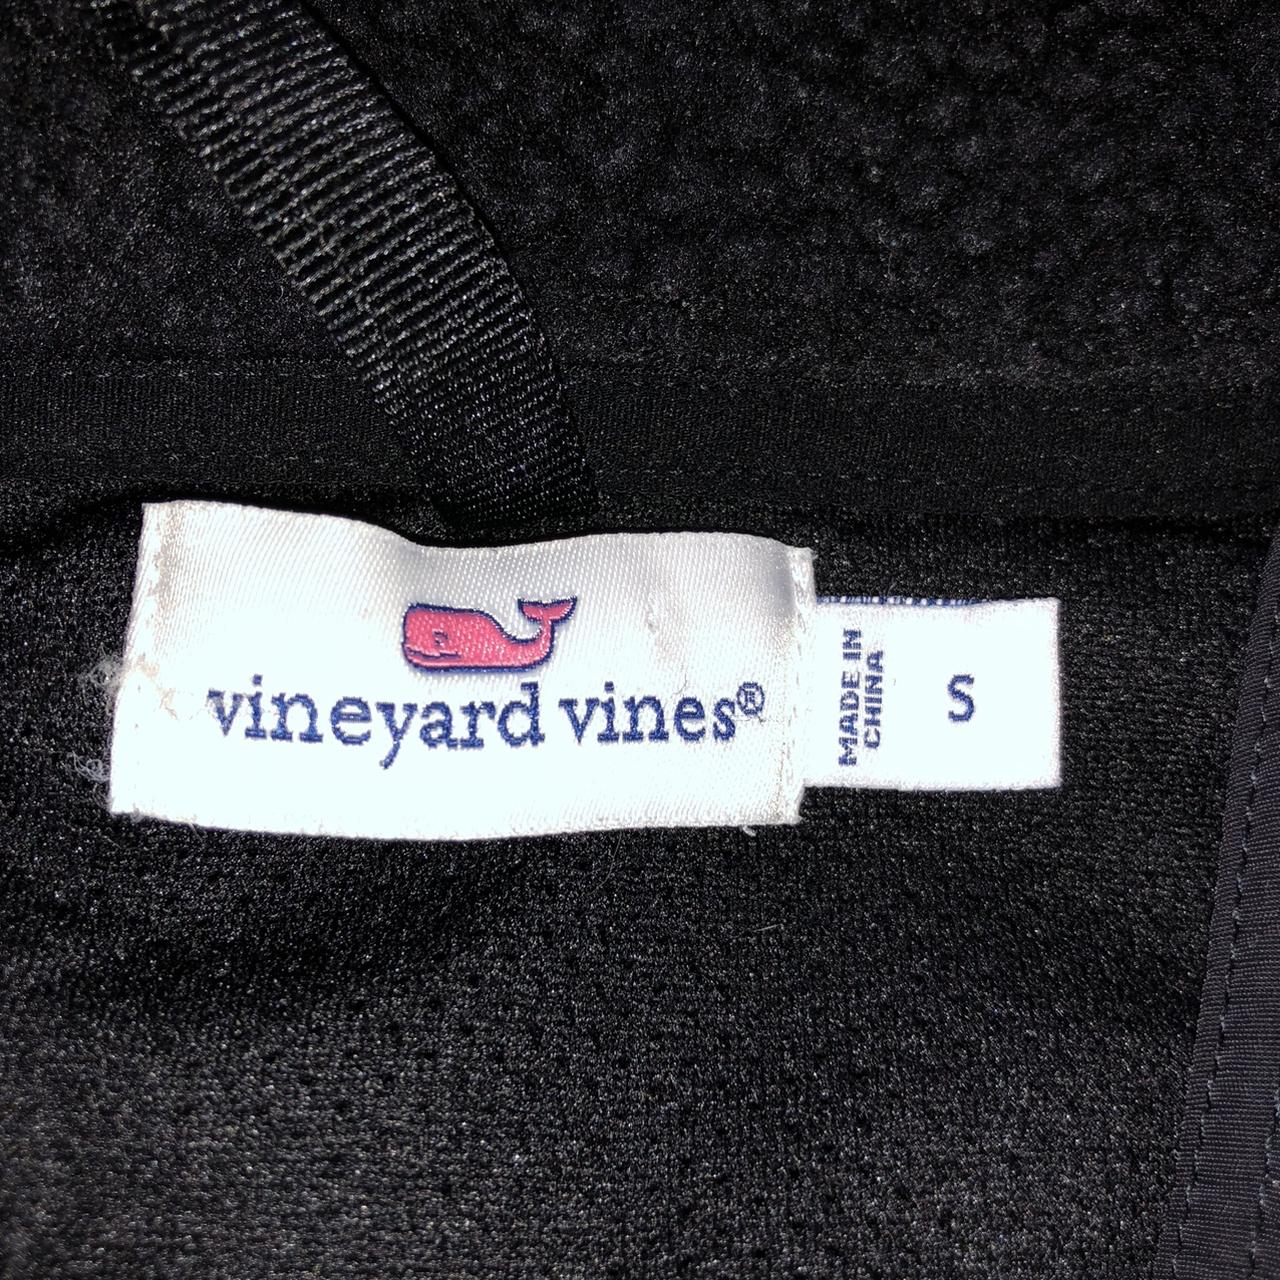 Vineyard vines Sherpa jacket #vineyardvines #frat - Depop